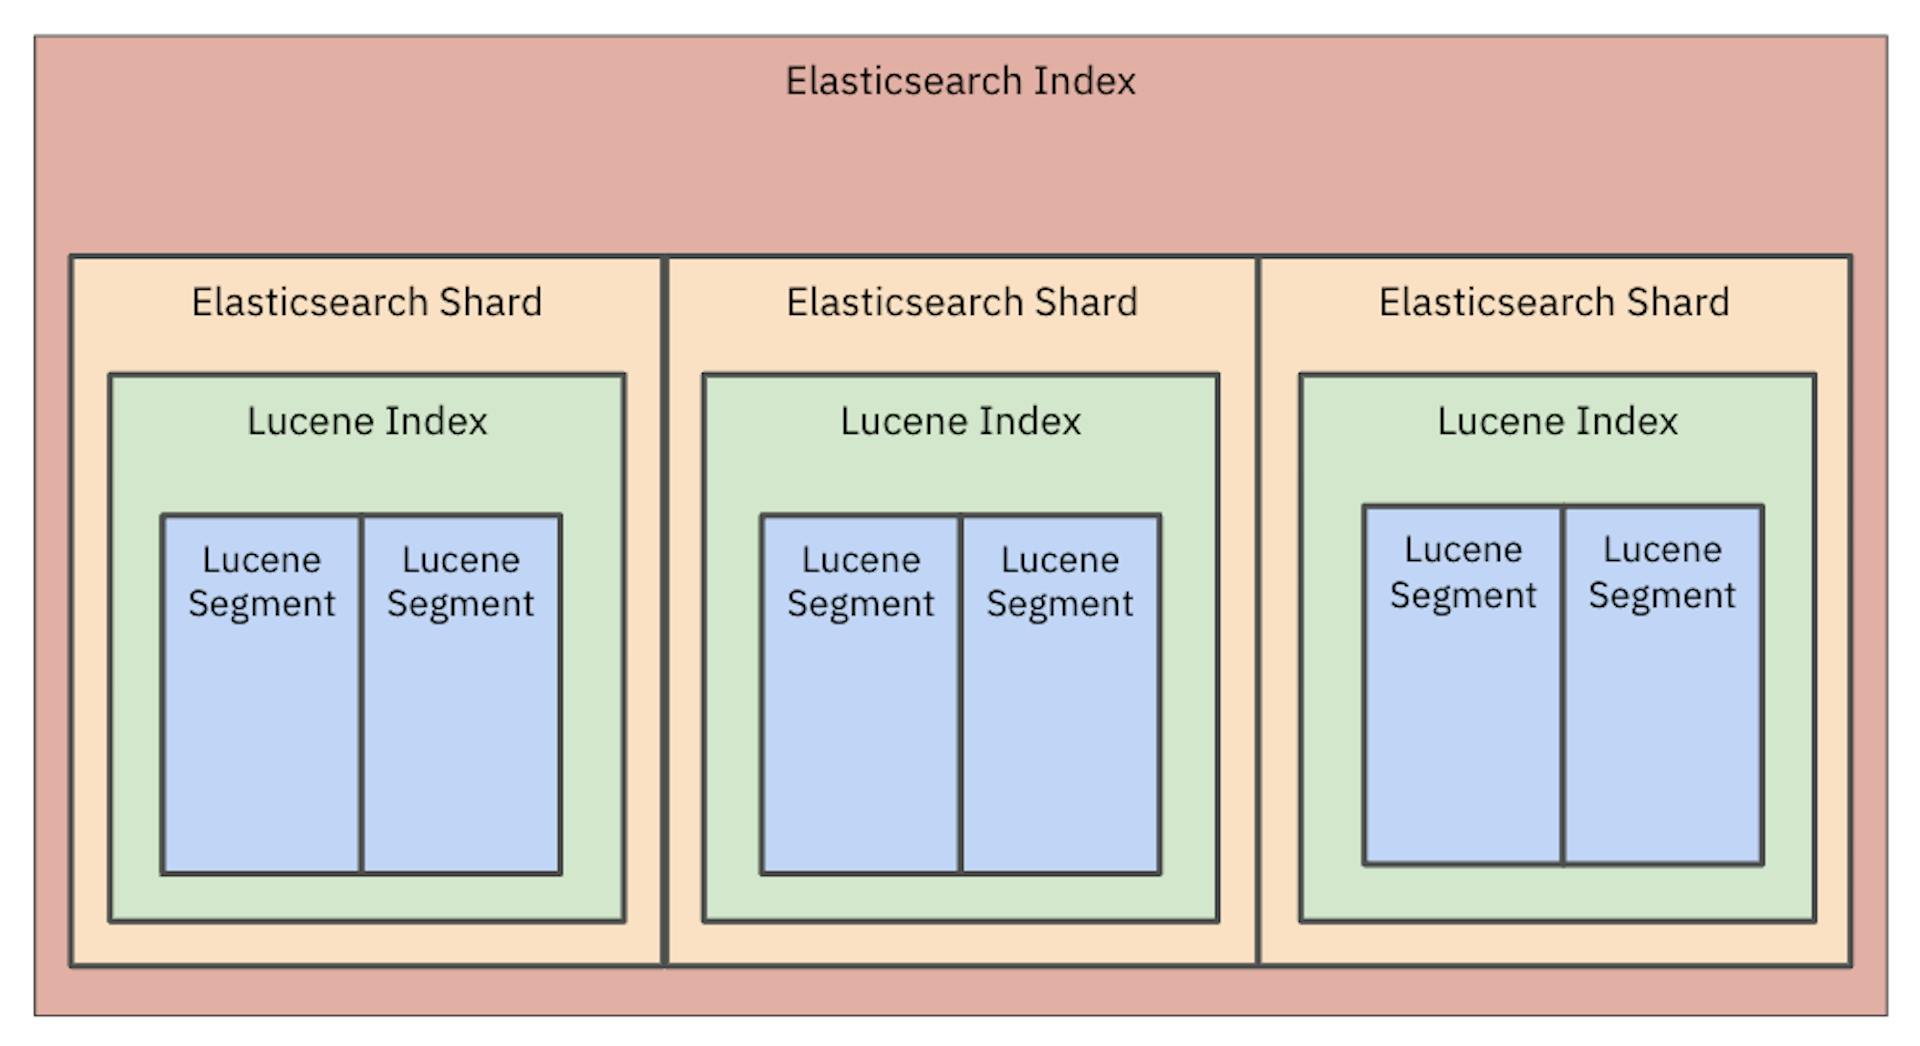 Imagem 1: Os dados do Elasticsearch são armazenados em um índice Lucene e esse índice é dividido em segmentos menores.